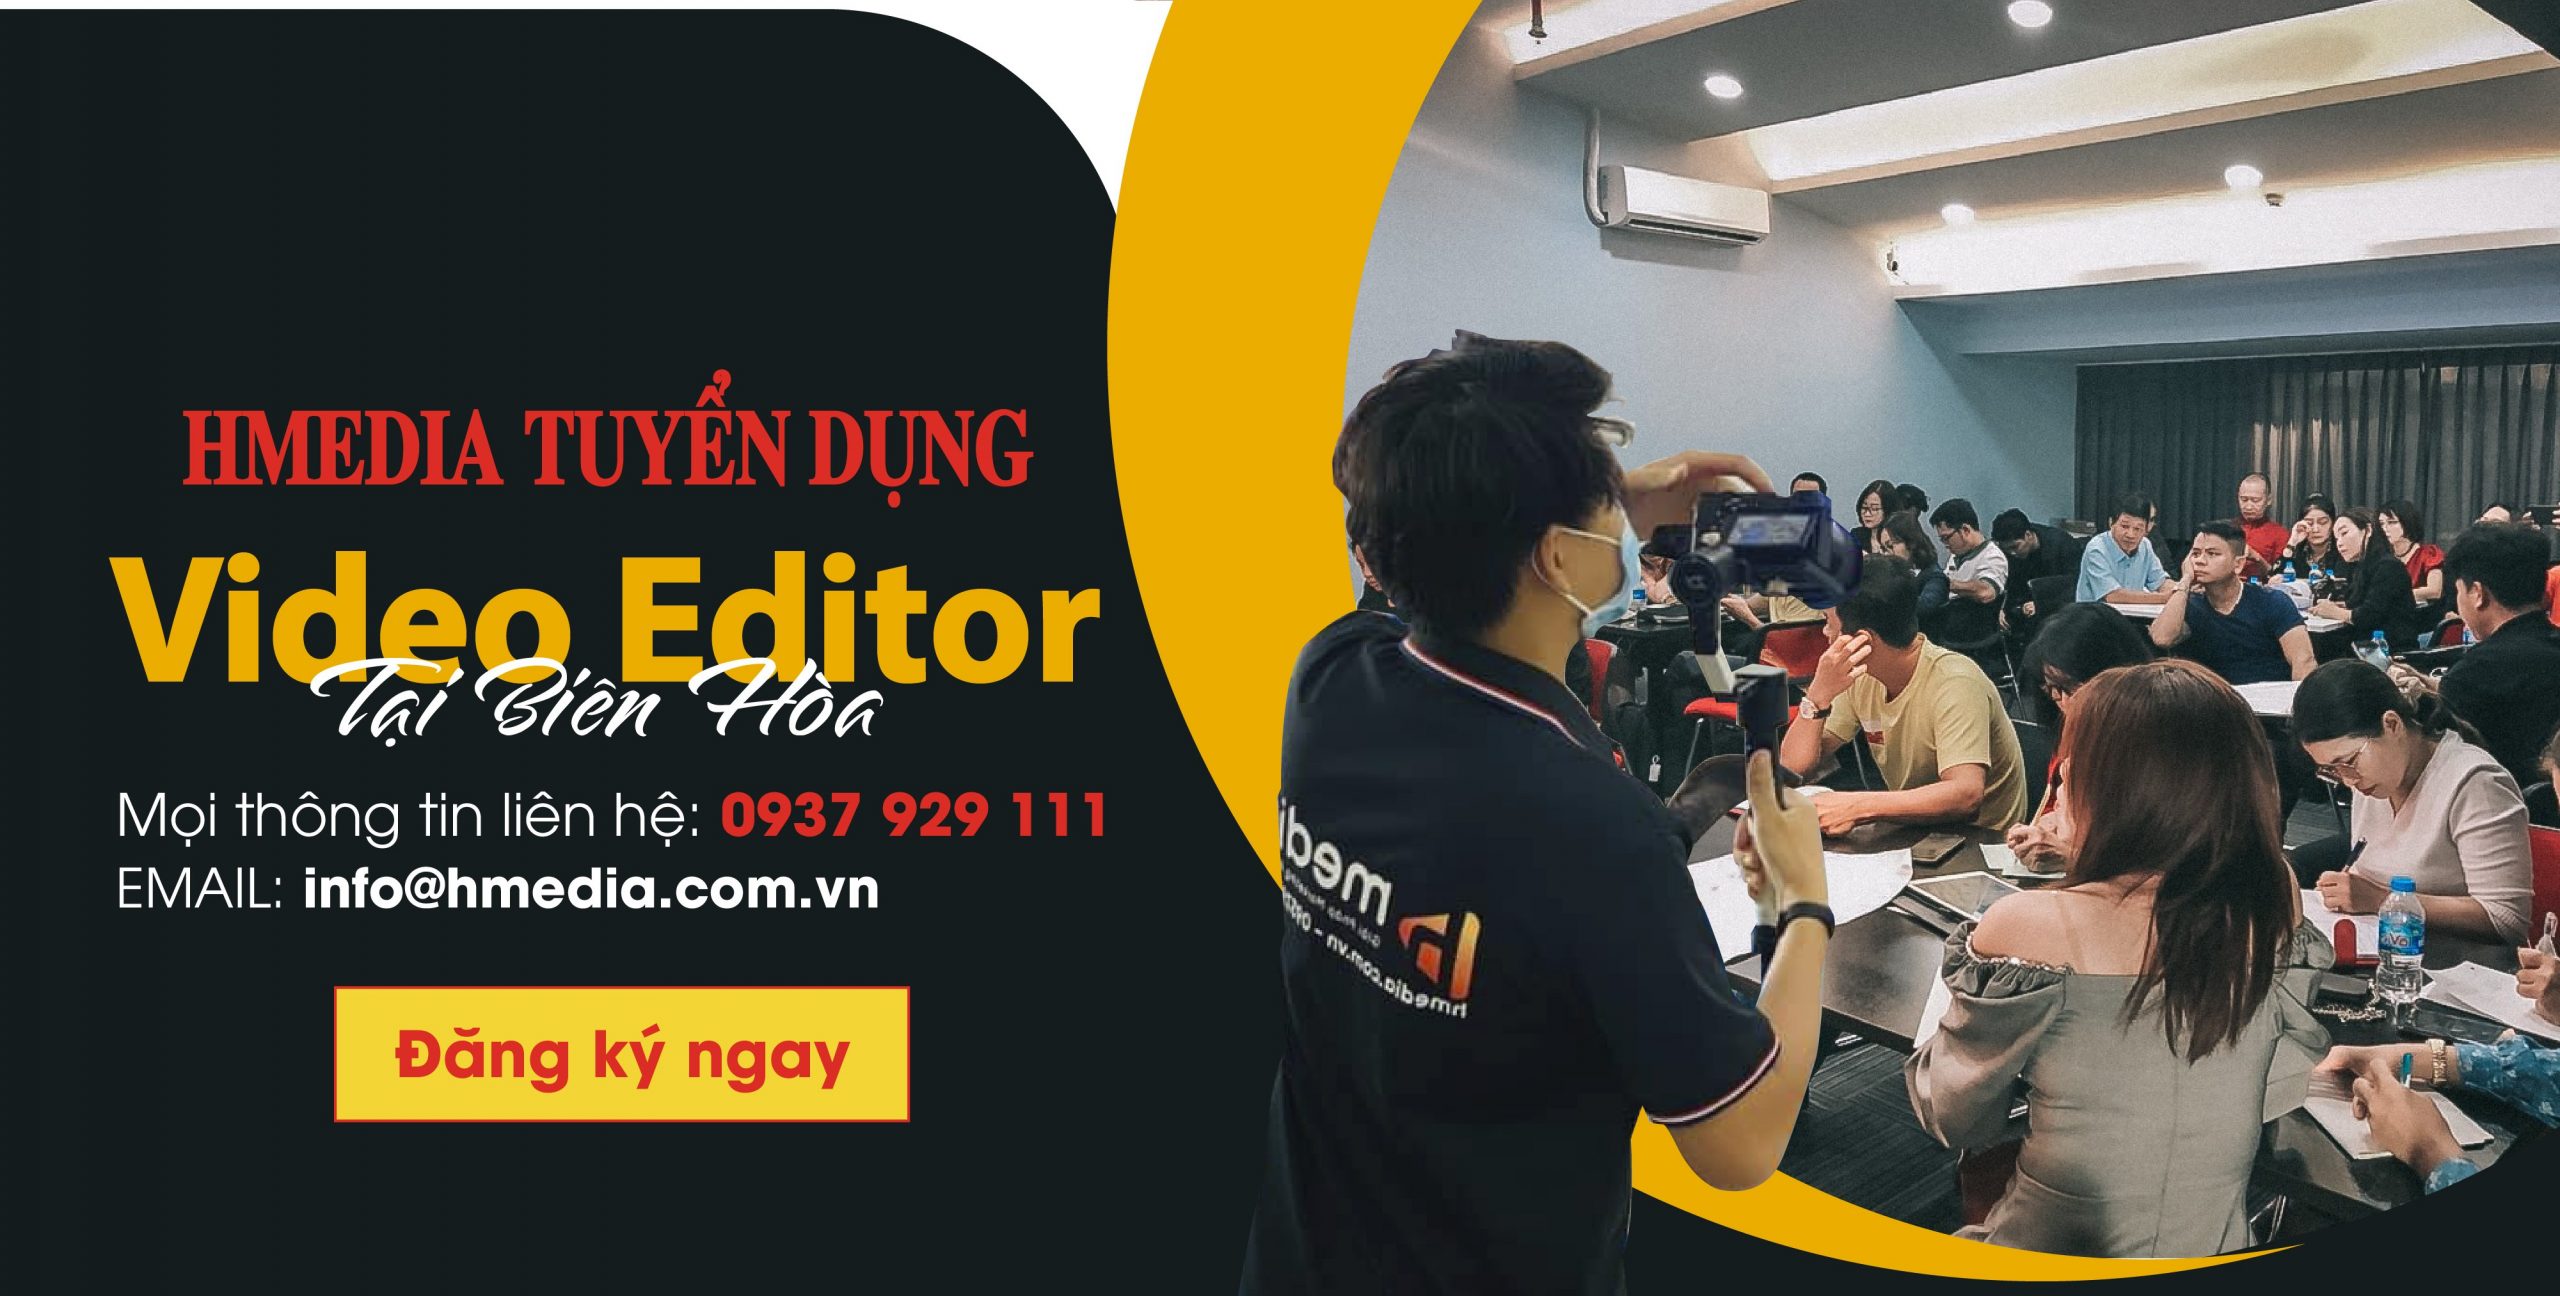 Tuyển nhân viên Video Editor tại Biên Hòa